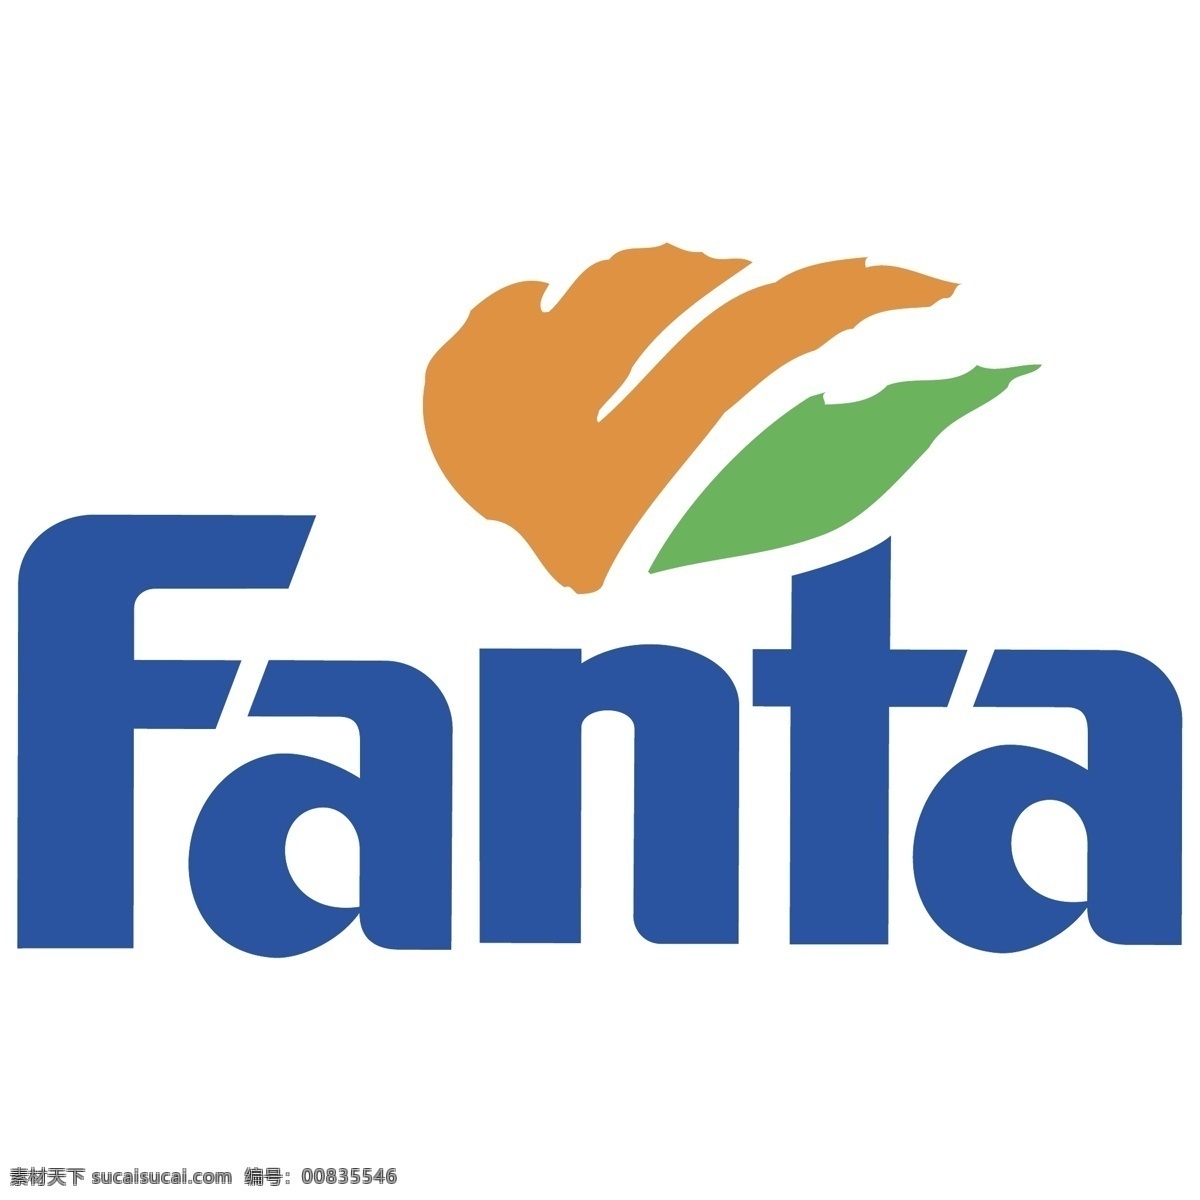 芬达 英文 logo fanta 企业 公司 汽水 碳酸饮料 百事 可口 标志图标 标志